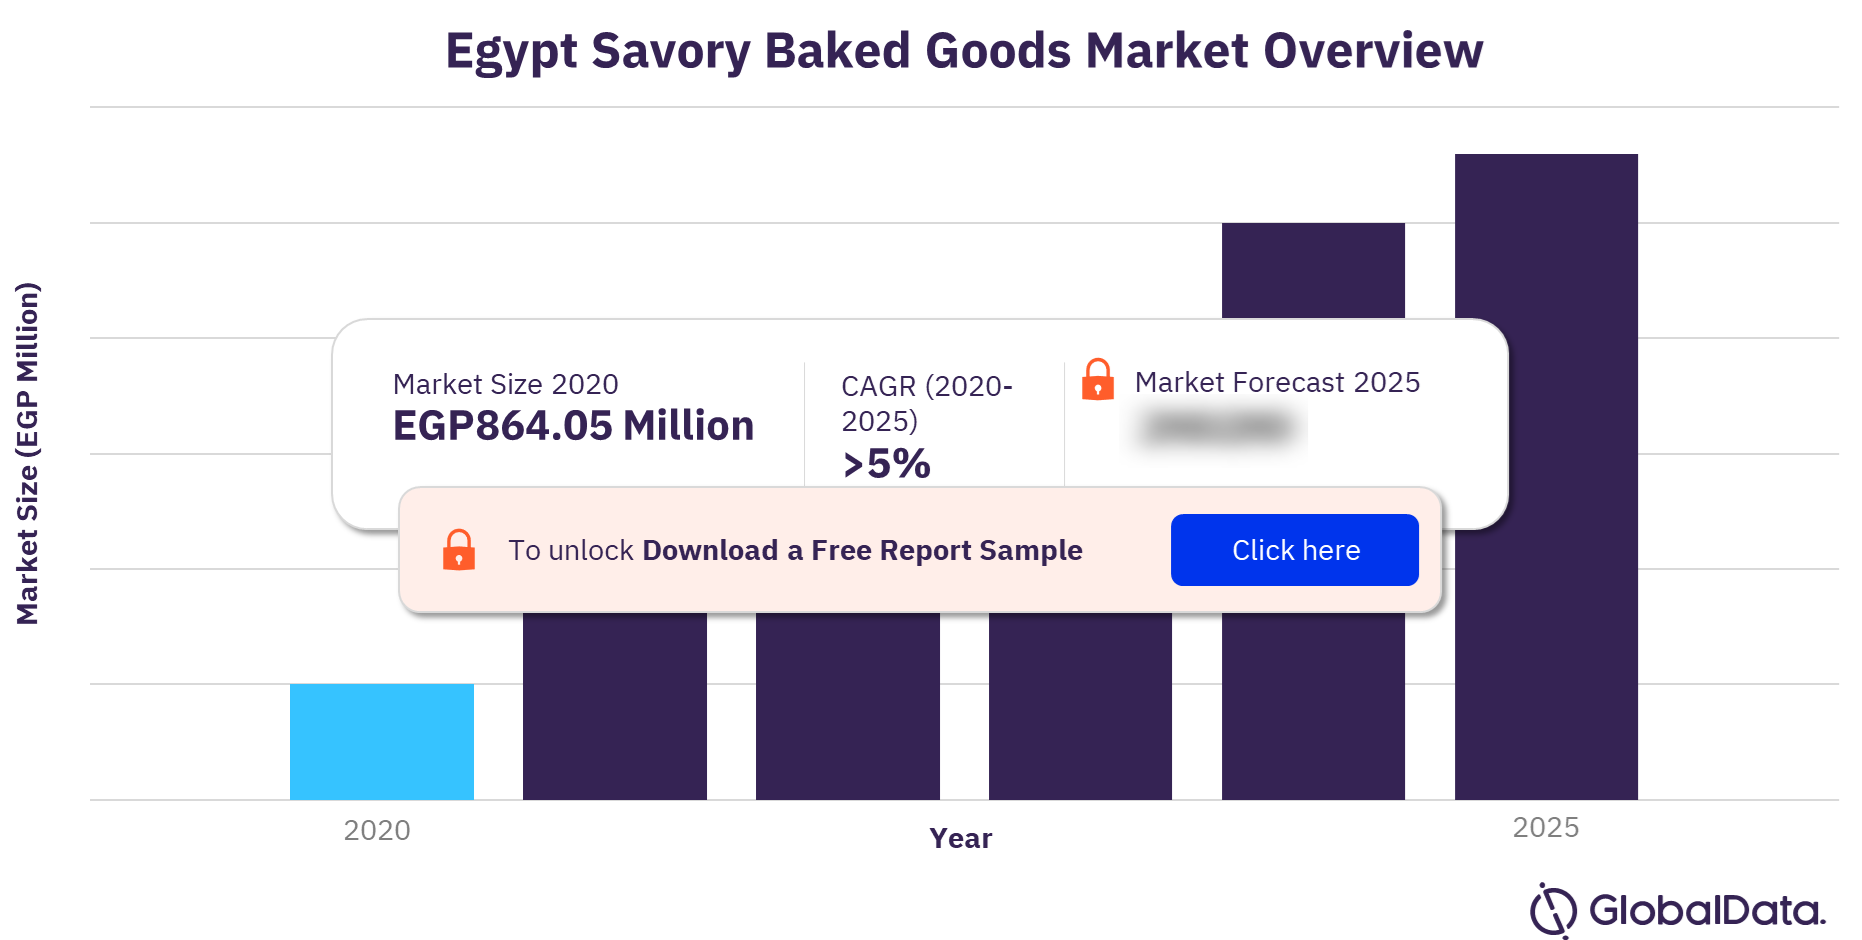 Egypt savory baked goods market outlook 